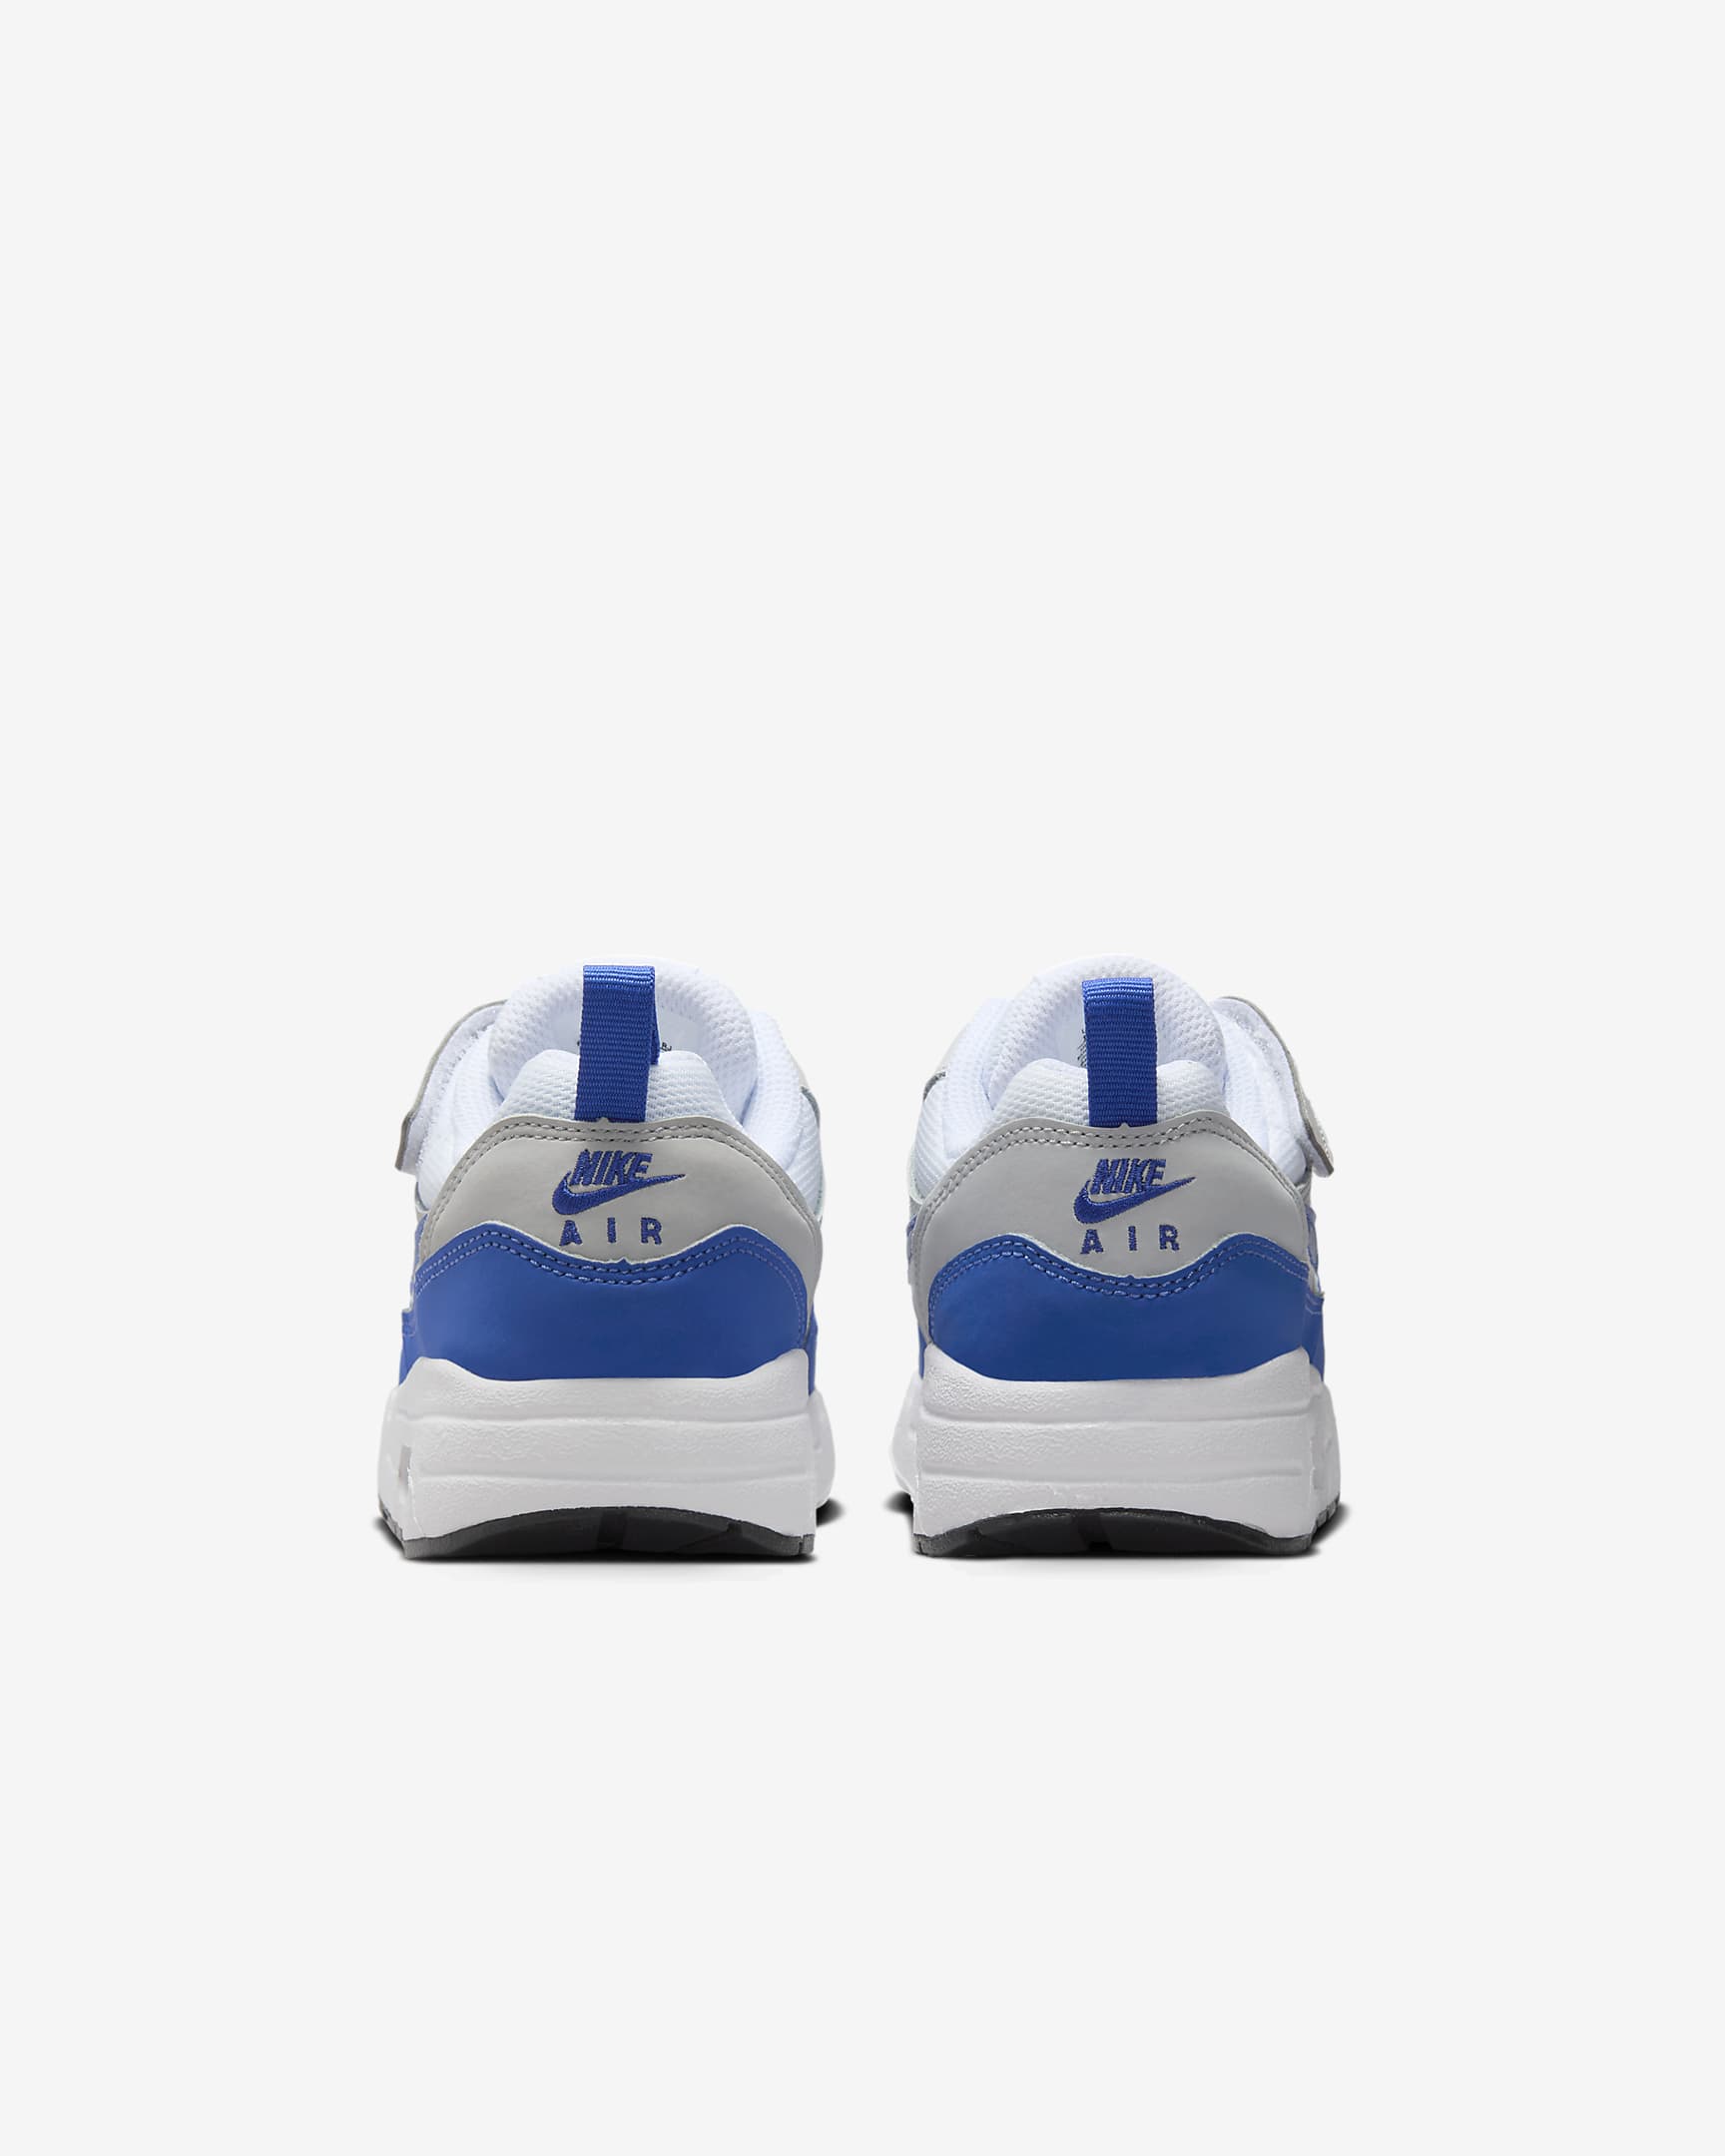 Nike Air Max 1 EasyOn Little Kids' Shoes - White/Neutral Grey/Black/Game Royal